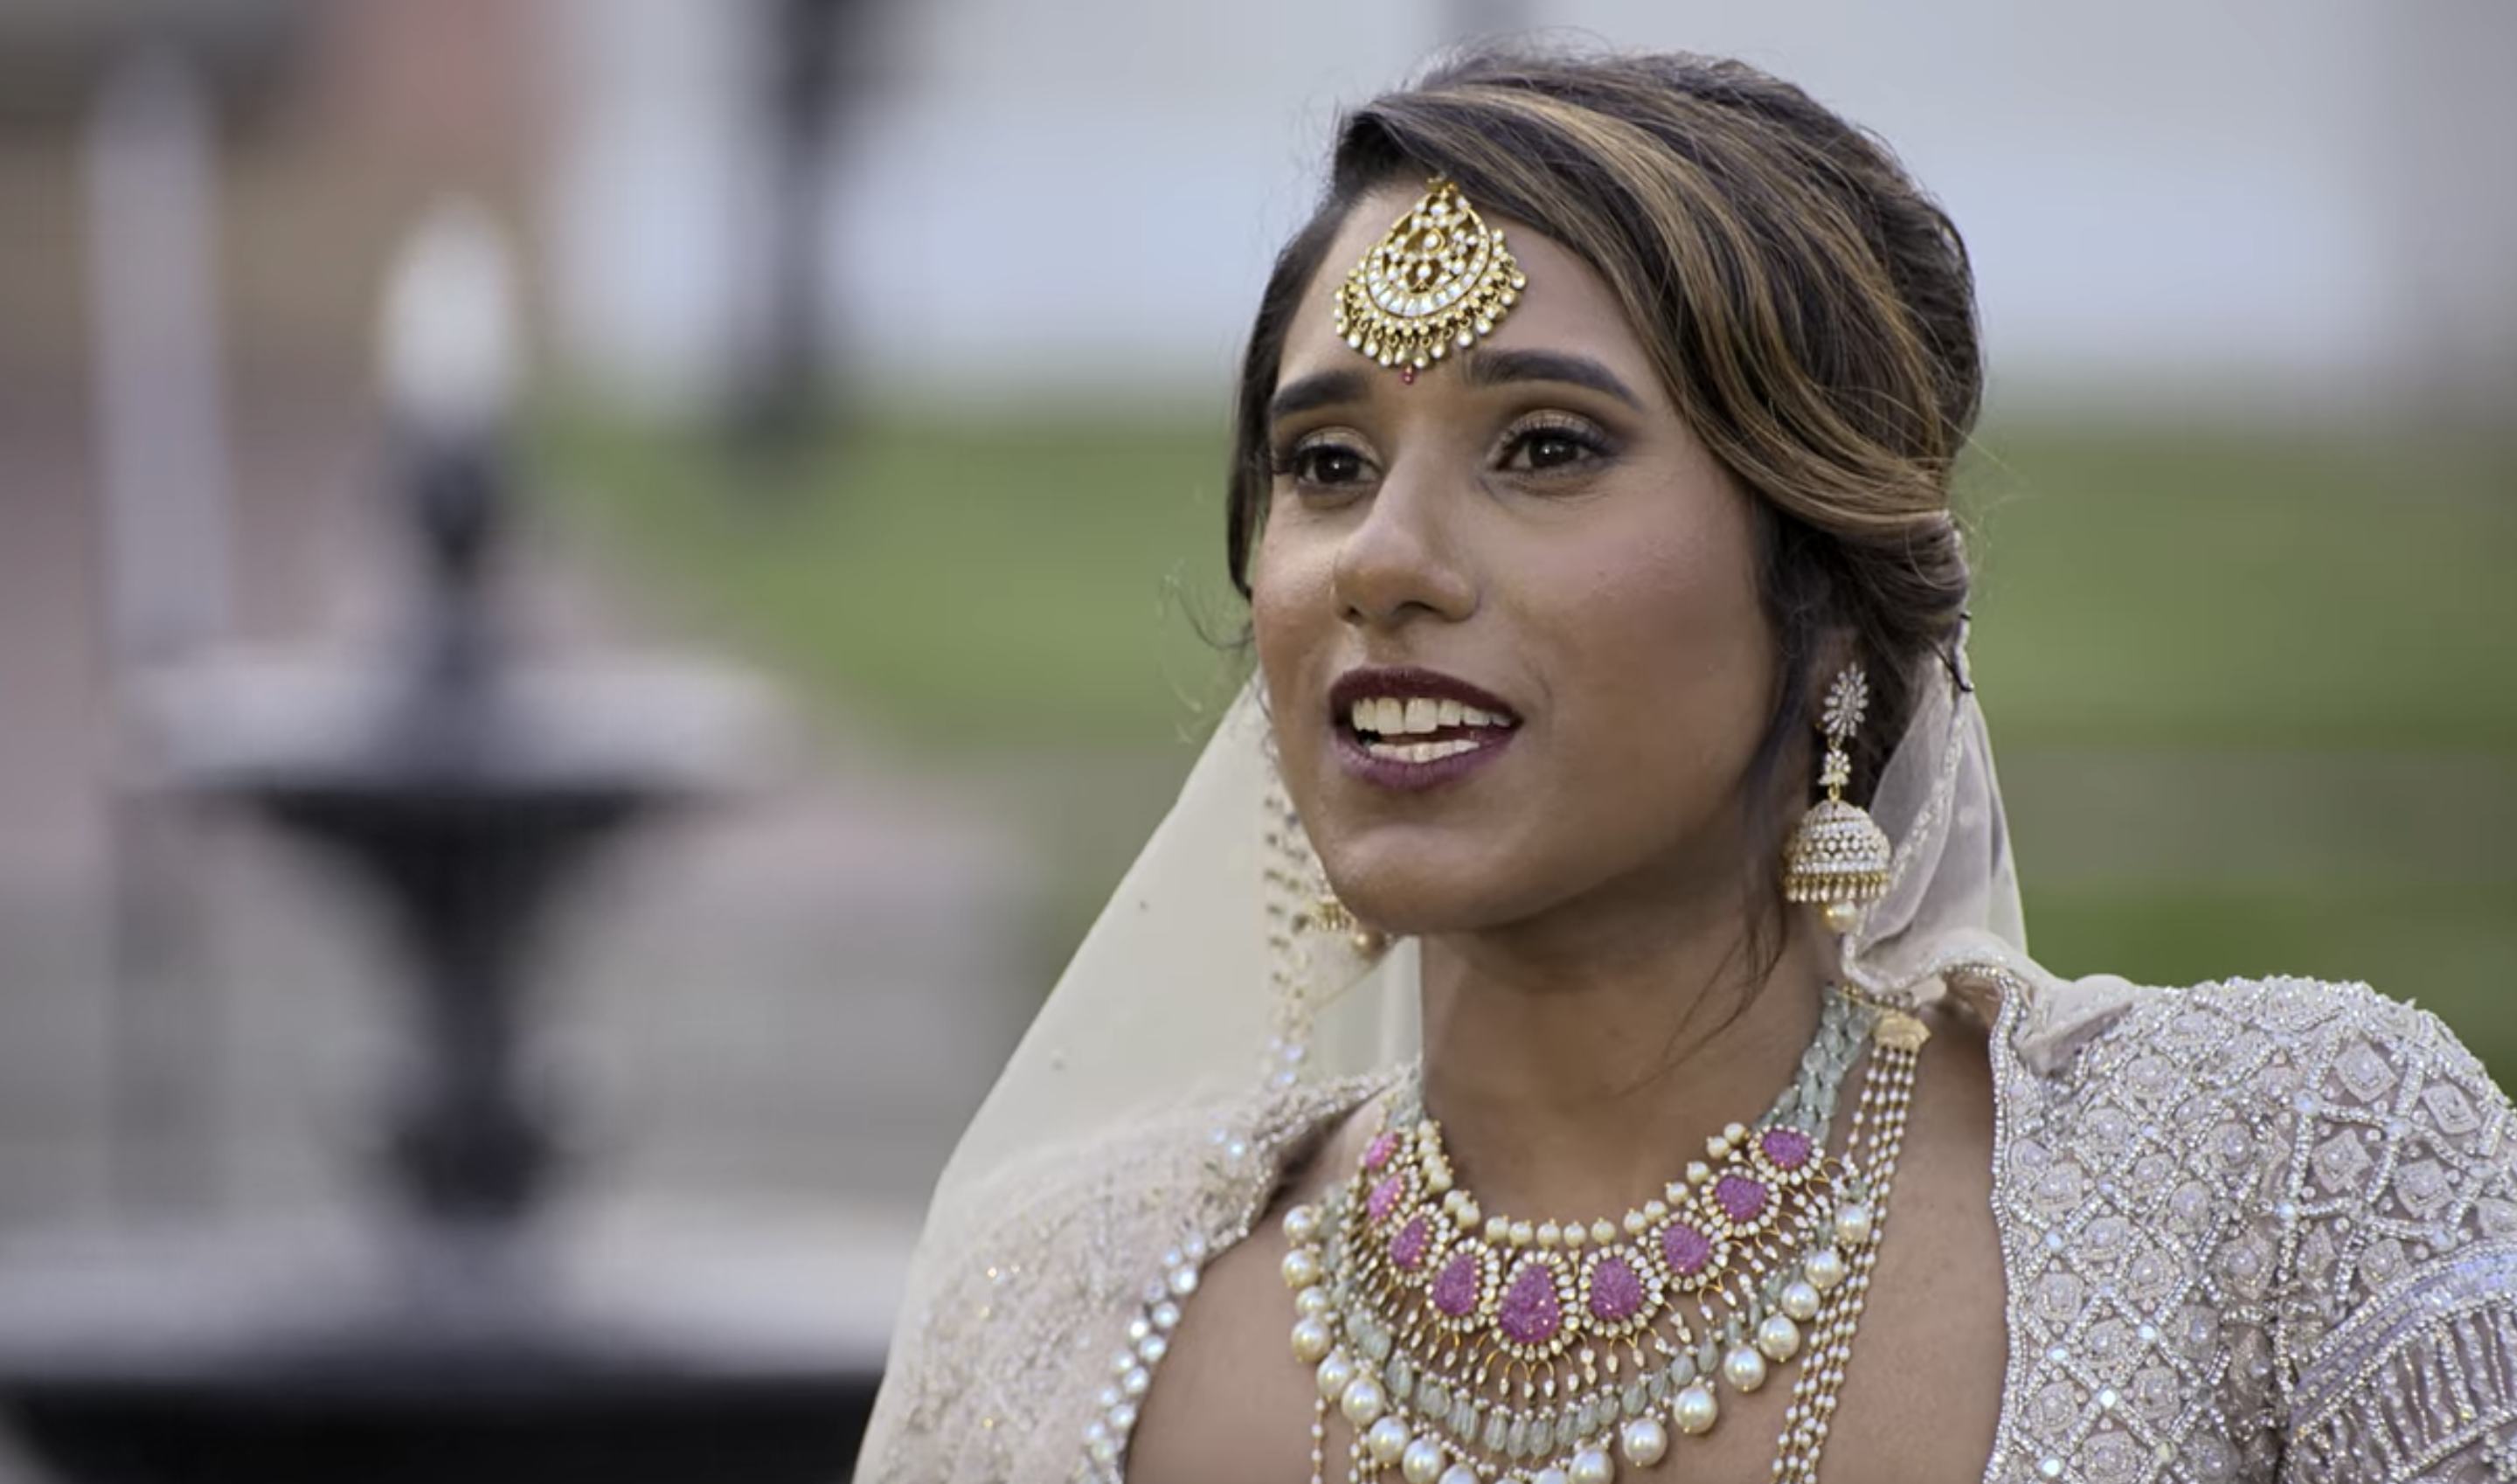 Deepti in her wedding attire